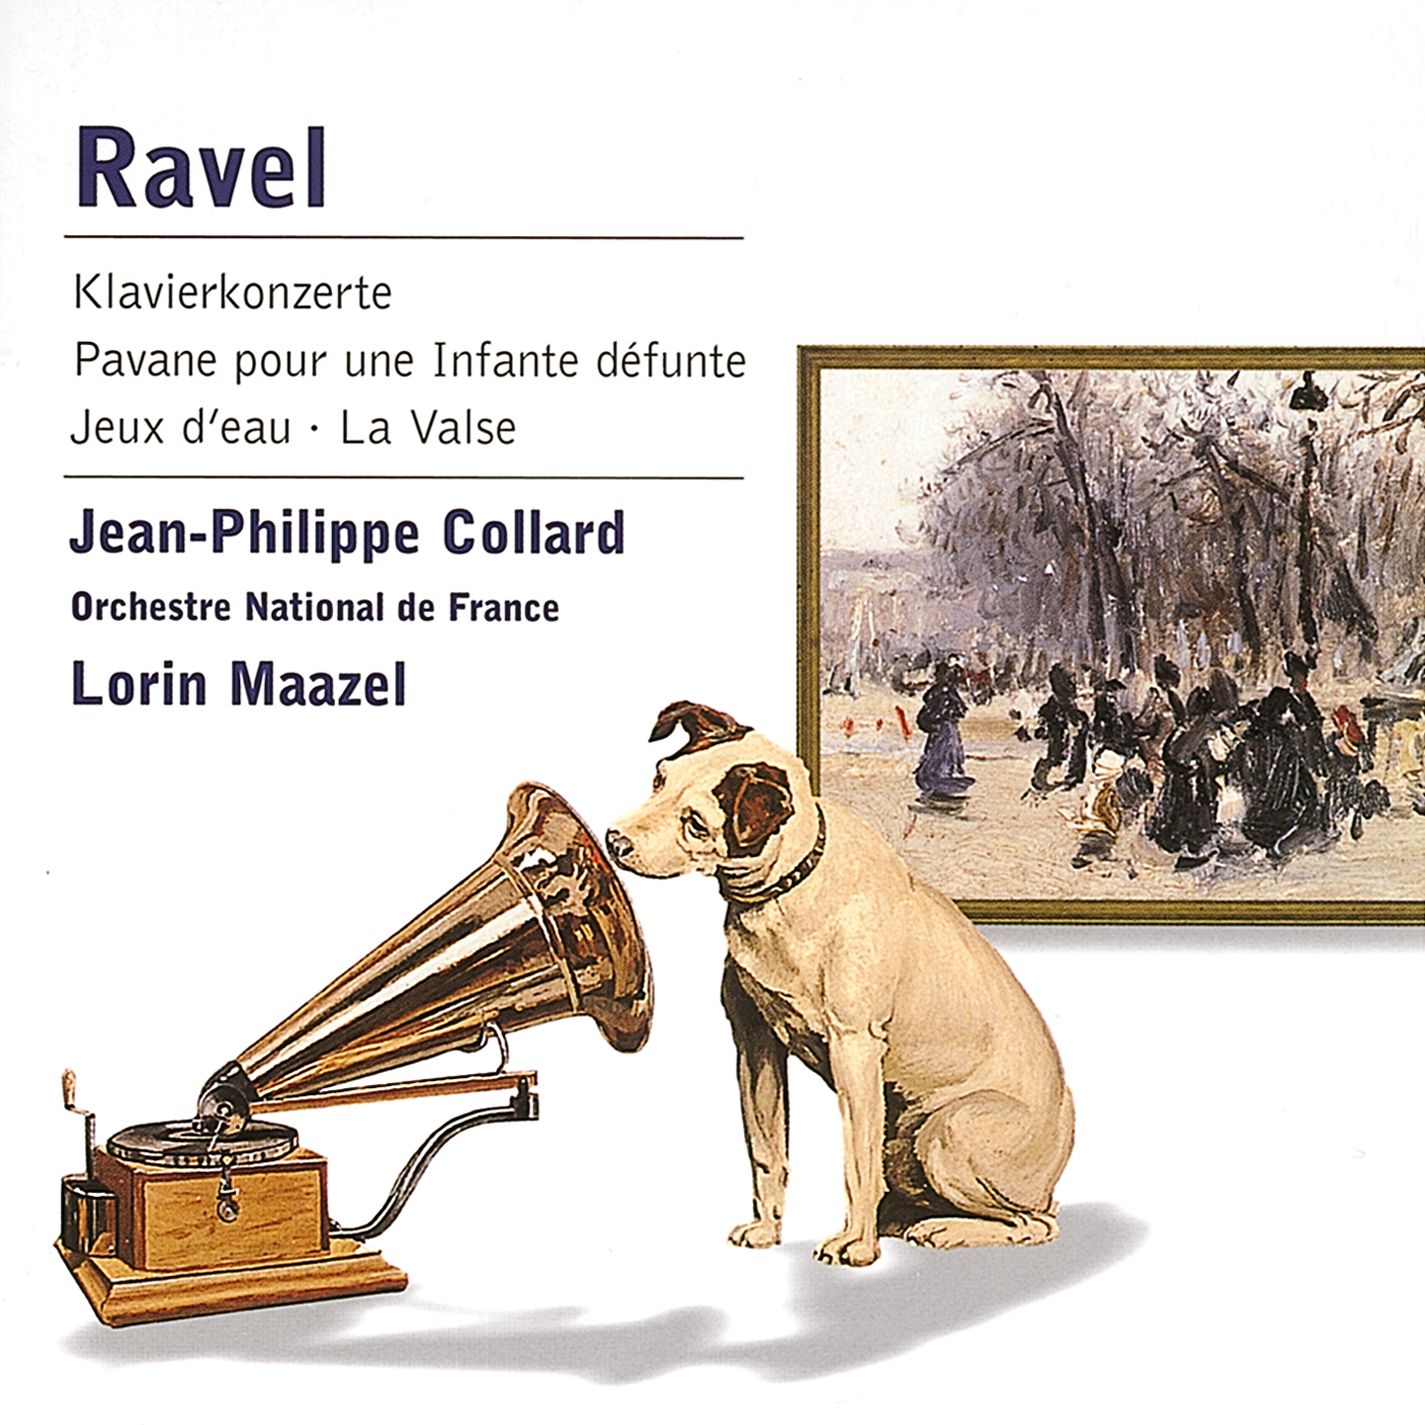 Ravel: Klavierkonzerte, La Valse